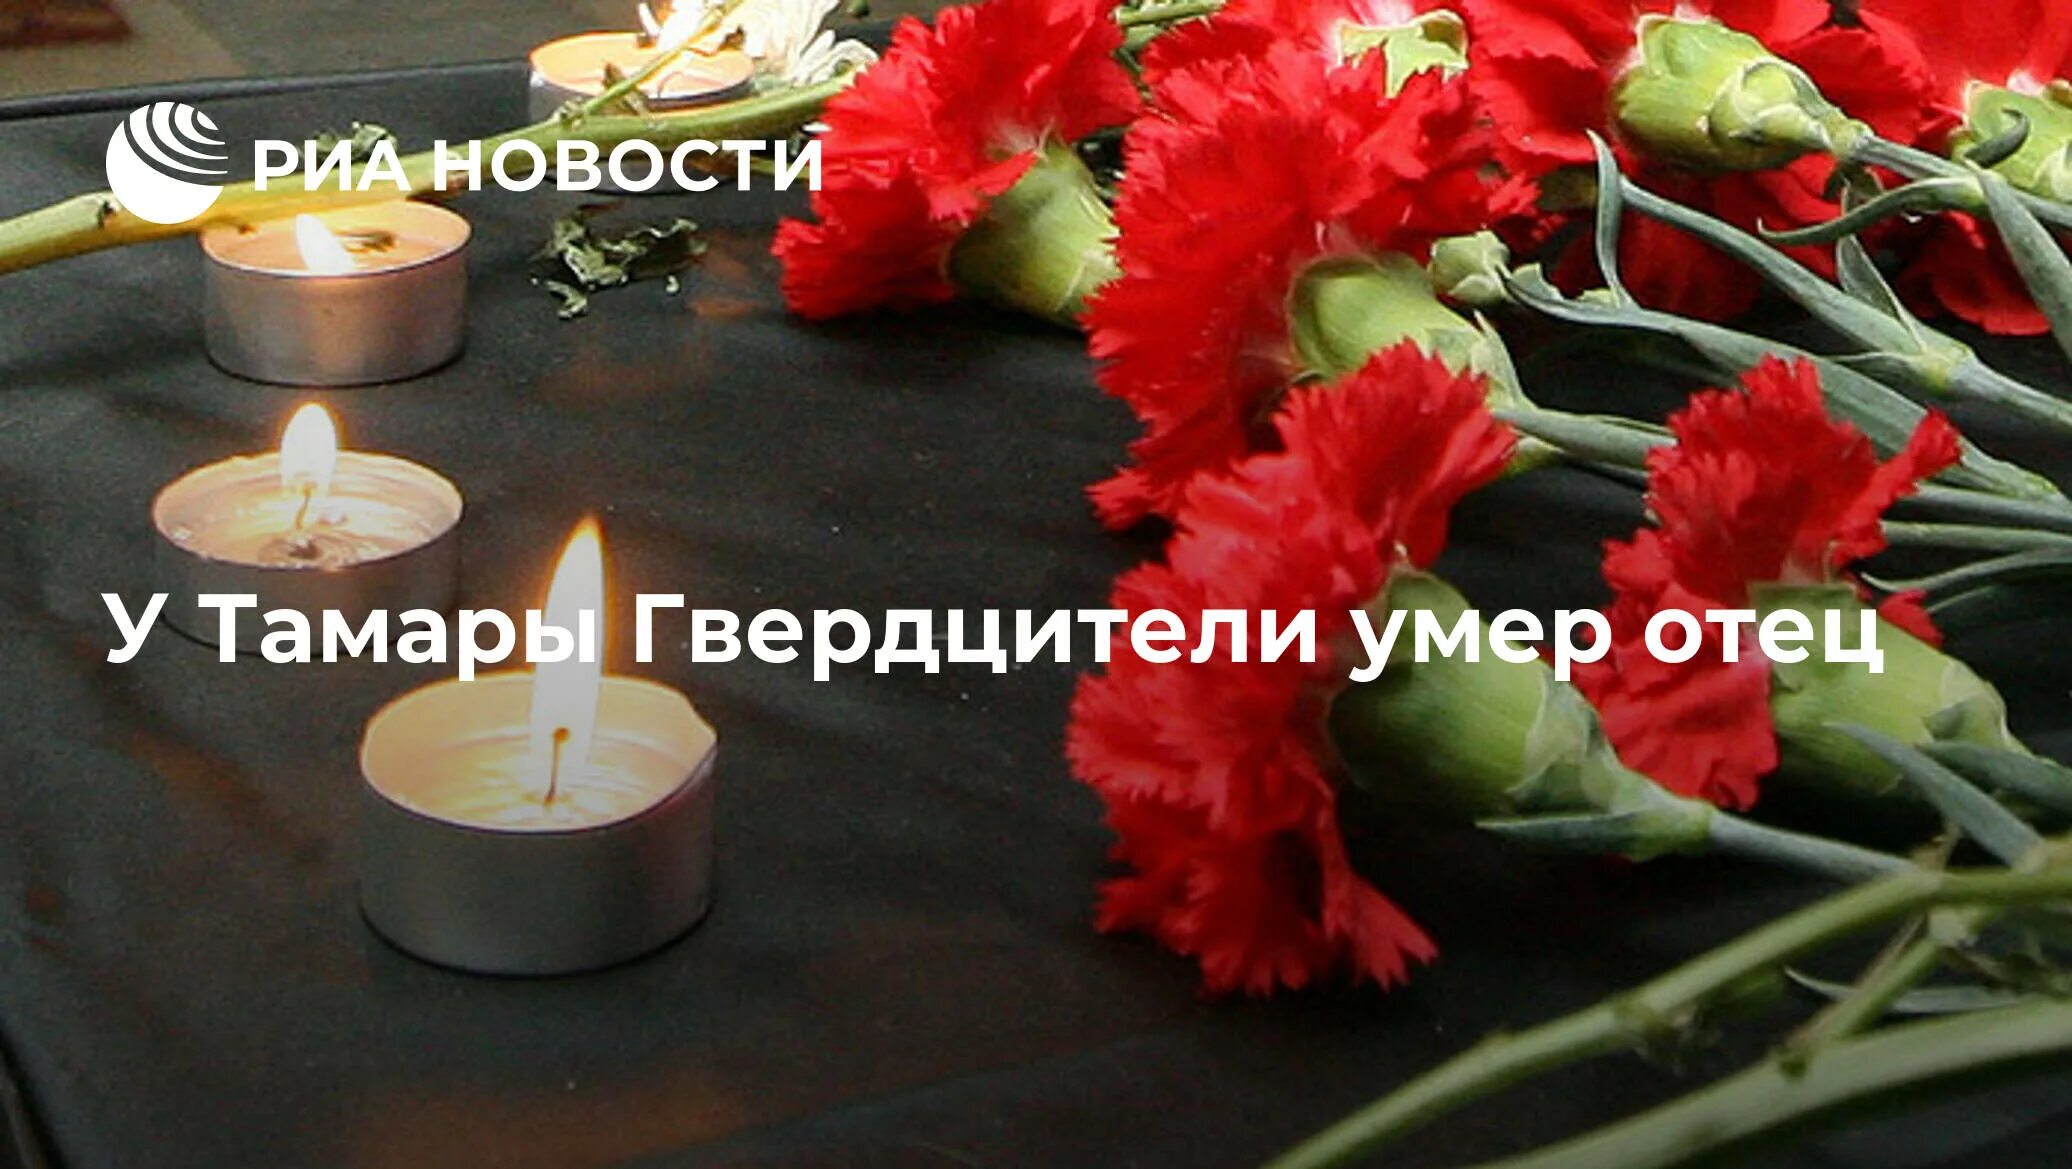 Сша выразили соболезнования россии. Соболезнования родным. Выразить соболезнование. Соболезнования родным погибшего солдата. Соболезнования родным солдата.